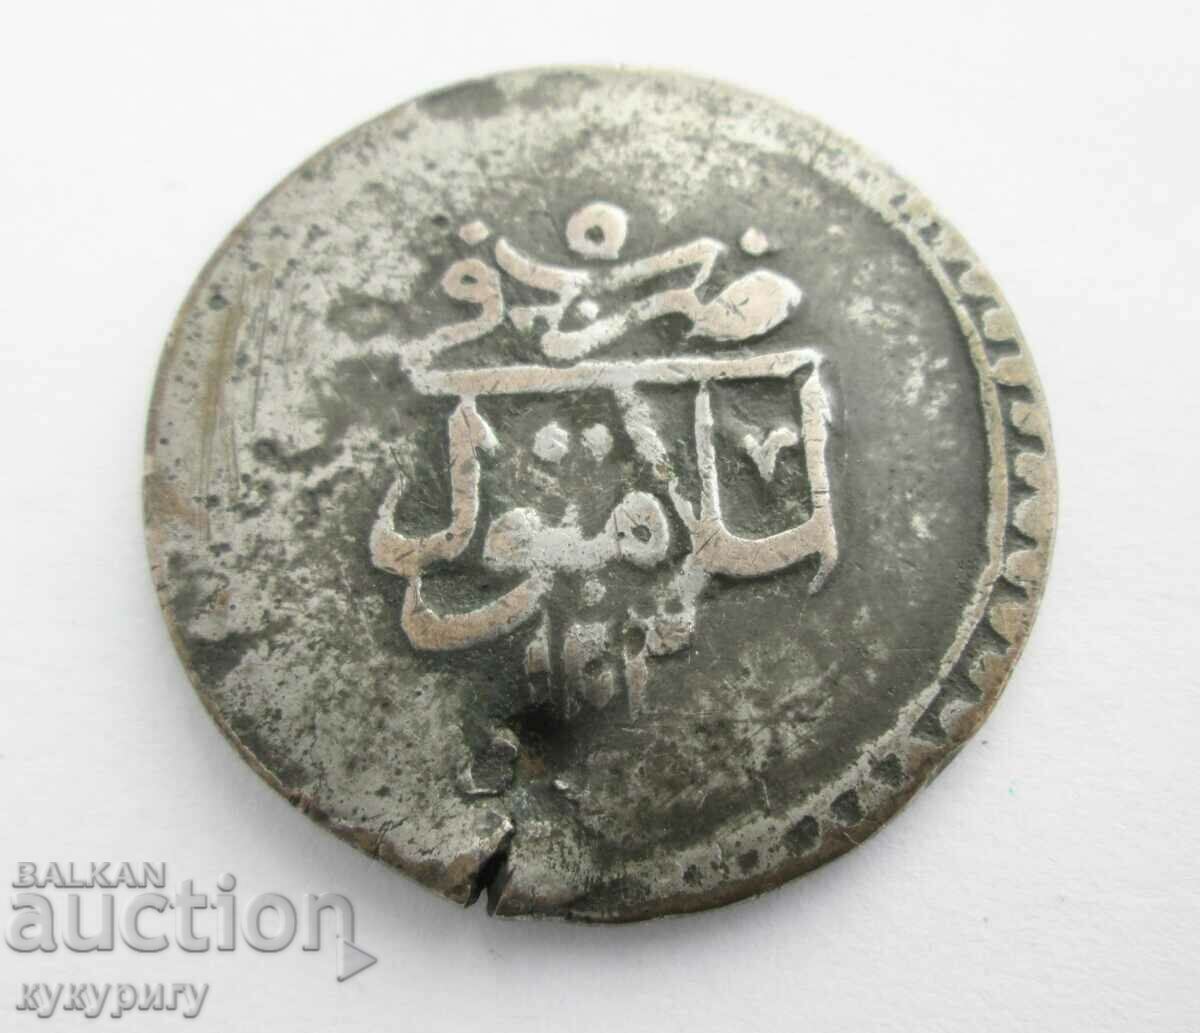 Monedă veche mare / mare de bijuterii turcești otomane